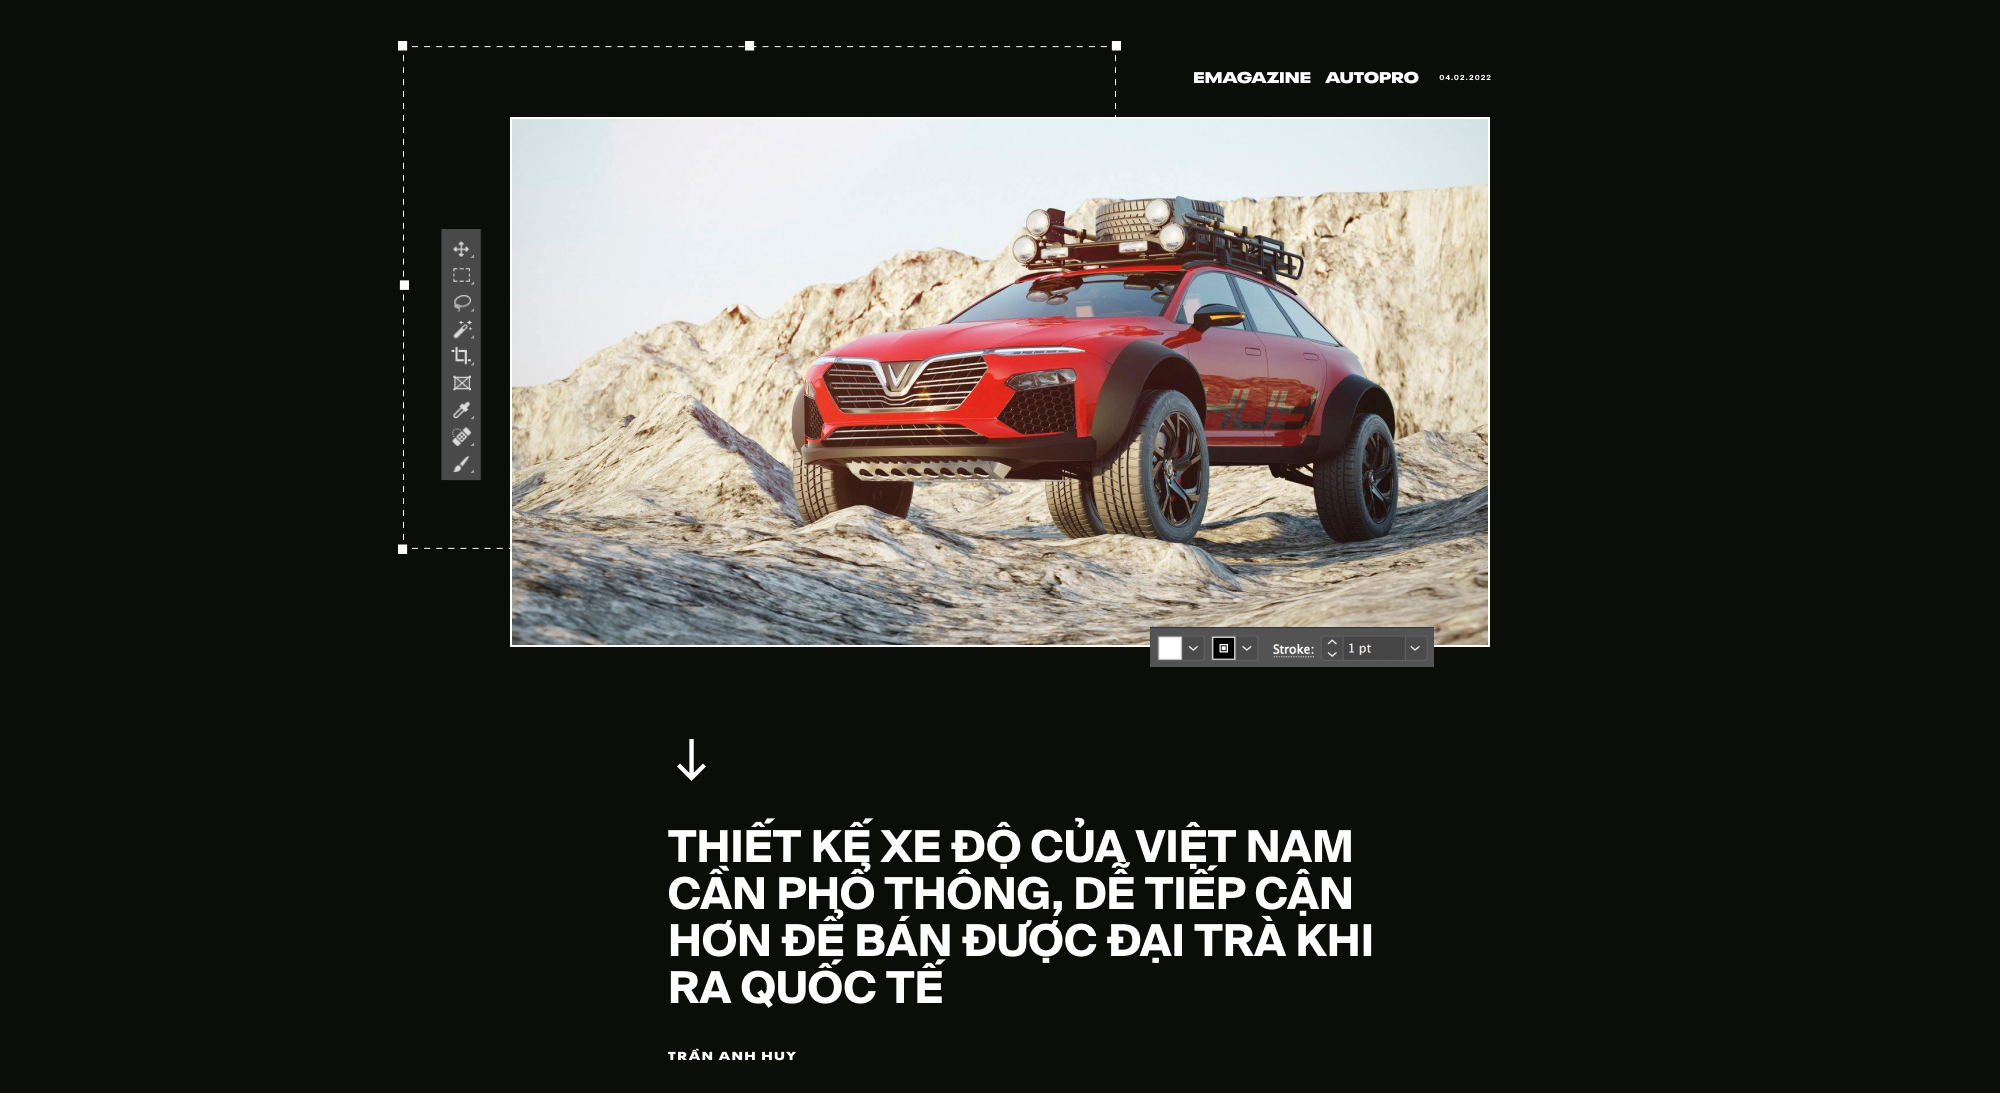 Cha đẻ những bản thiết kế VinFast Lux độ gây sốt: ‘Thợ Việt độ xe độc đáo và chất hơn người Mỹ’ - Ảnh 12.